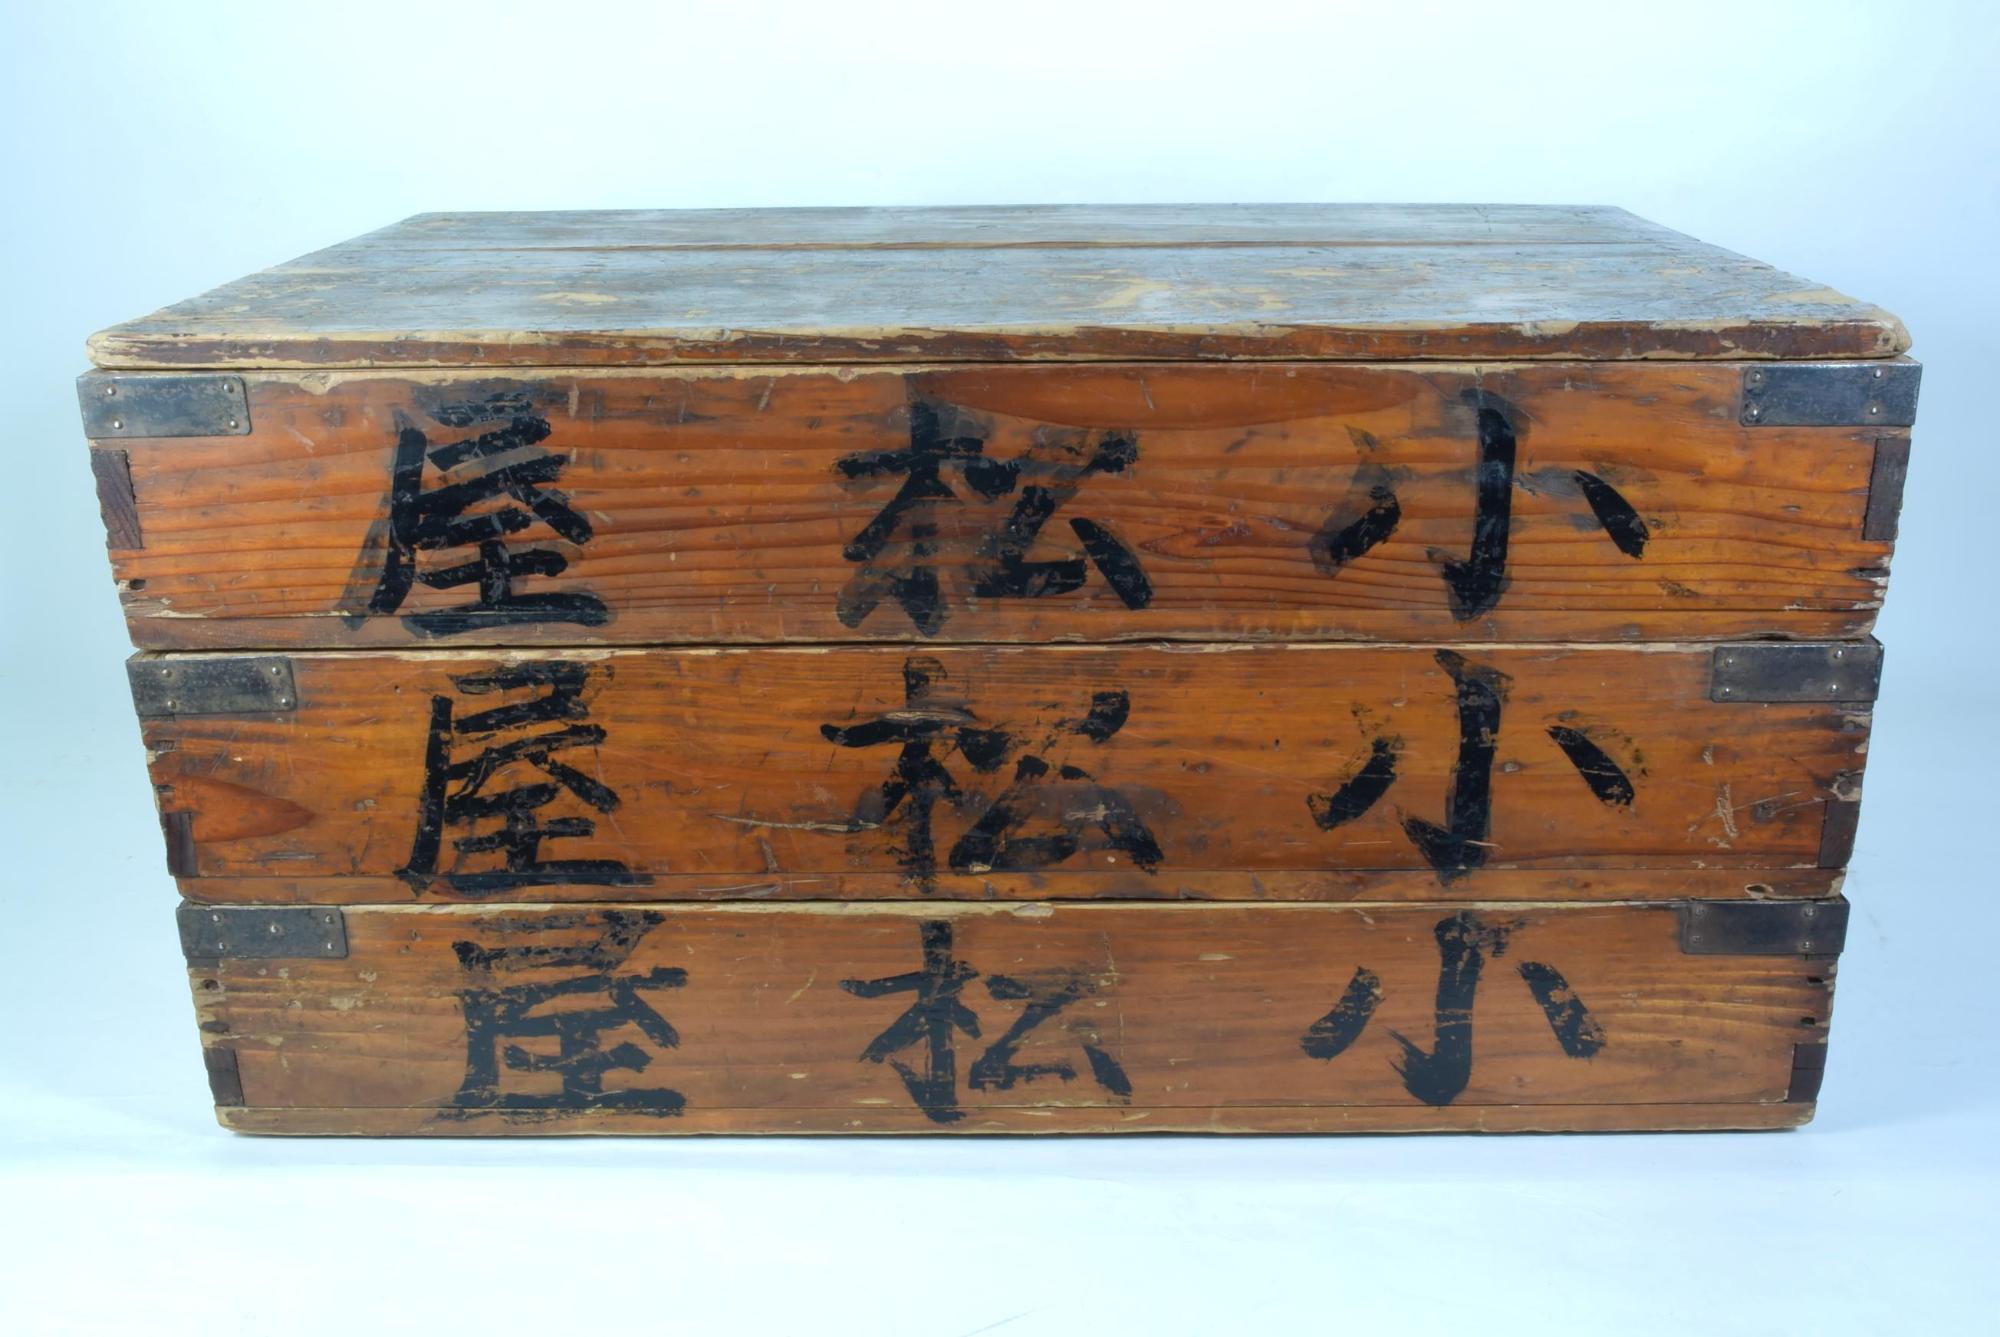 木箱の側面に「小松屋」の文字が書かれており長方形の木箱が3段積み重ねられ、蓋がされている菓子箱の写真